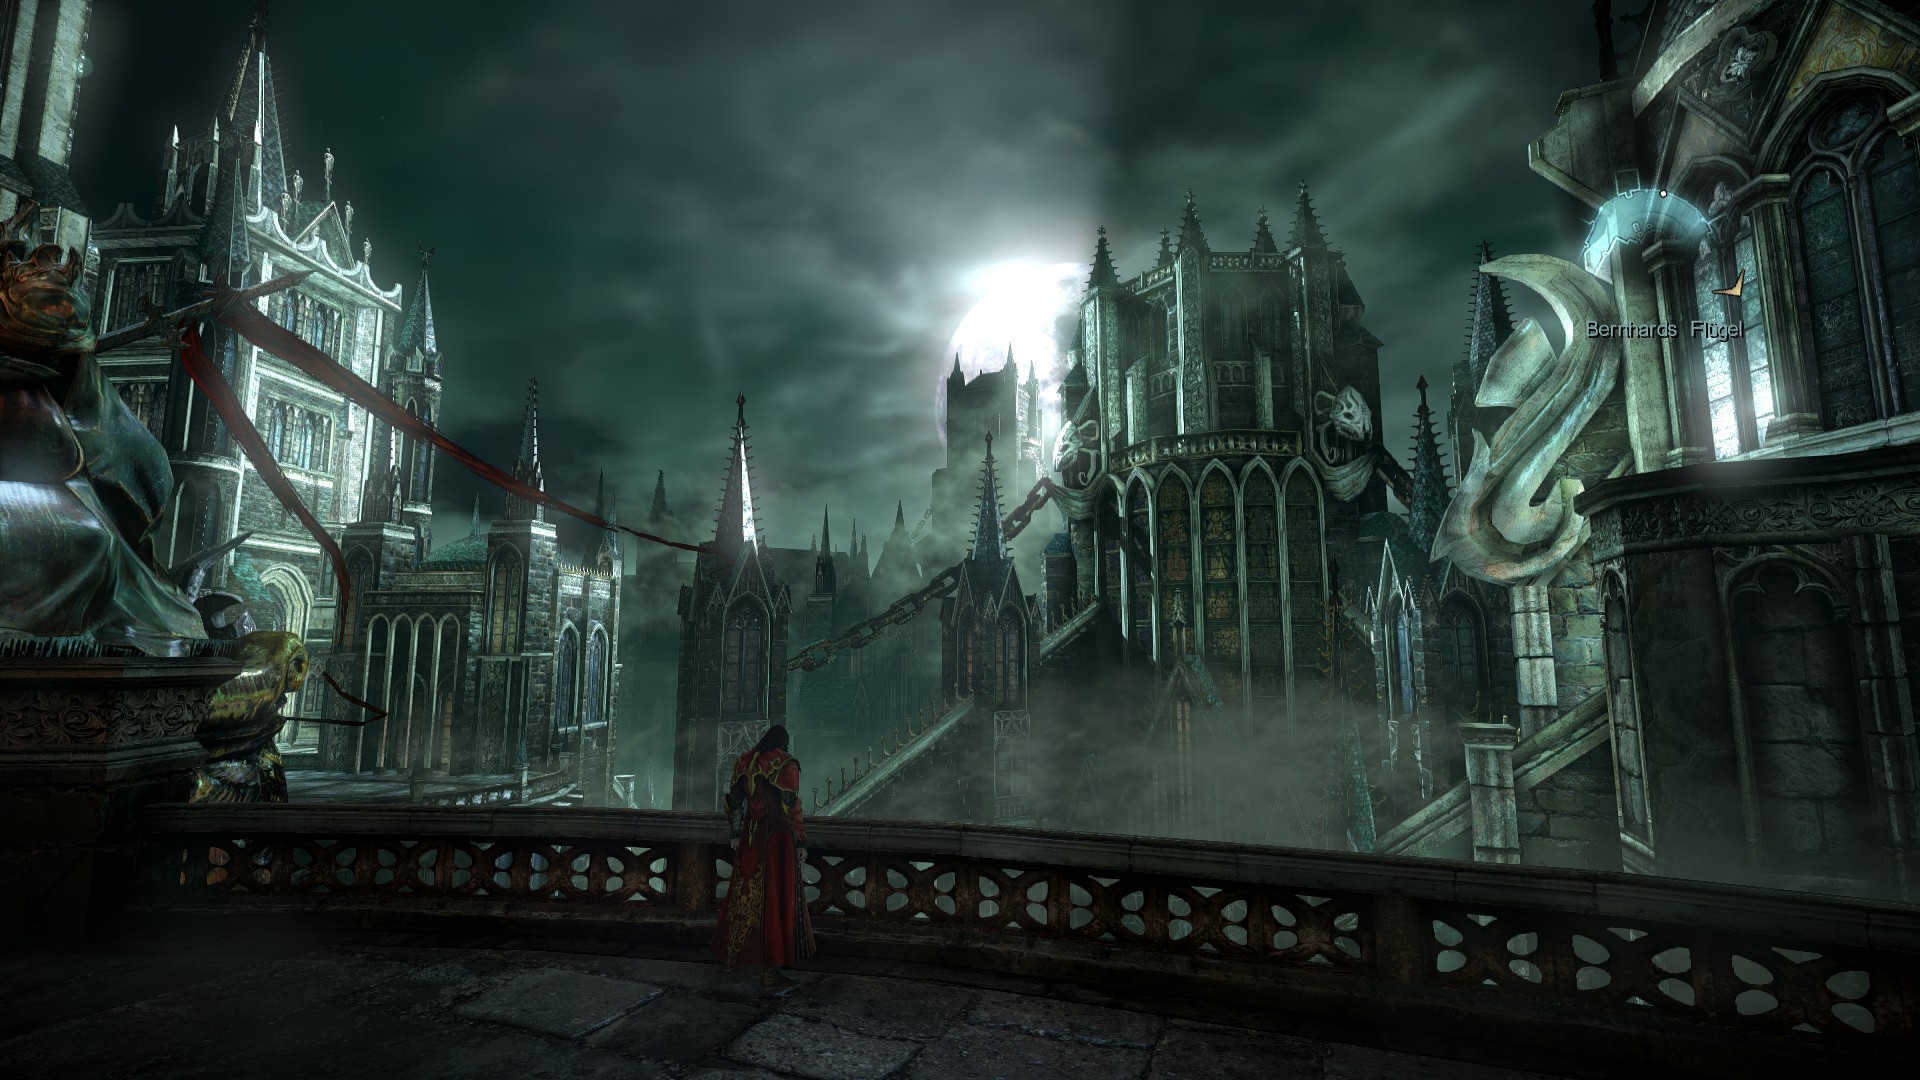 Draculas Castle 1 by MysteriousStranger24 on DeviantArt